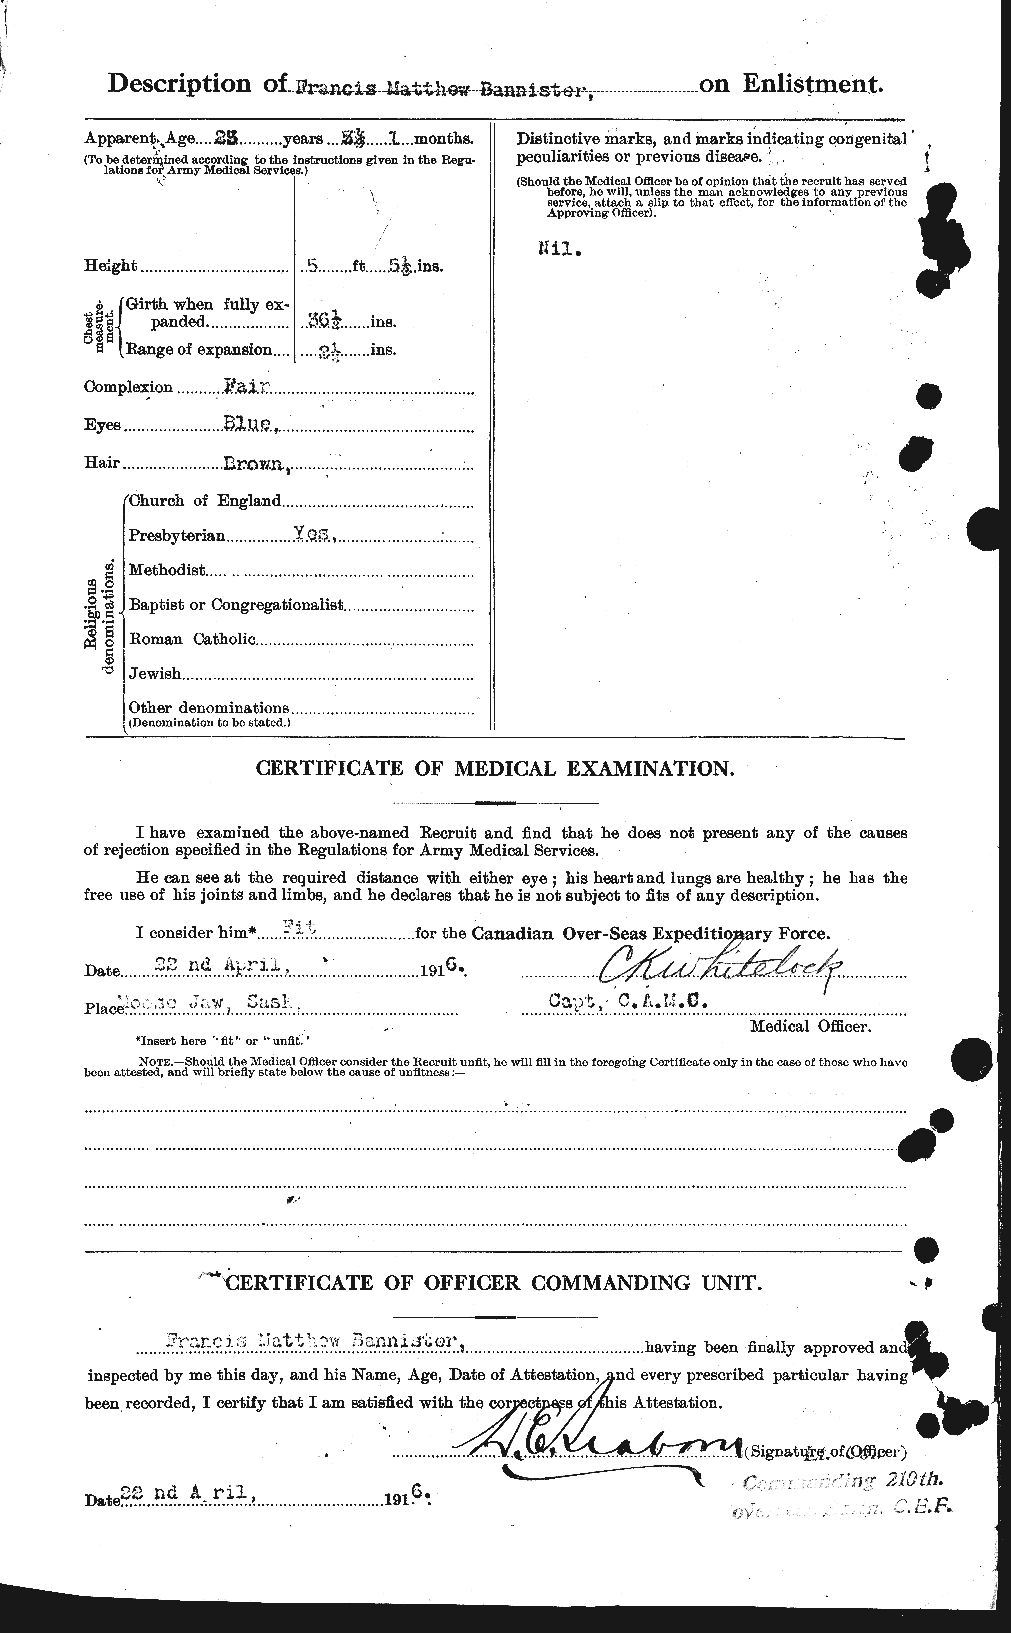 Dossiers du Personnel de la Première Guerre mondiale - CEC 224804b